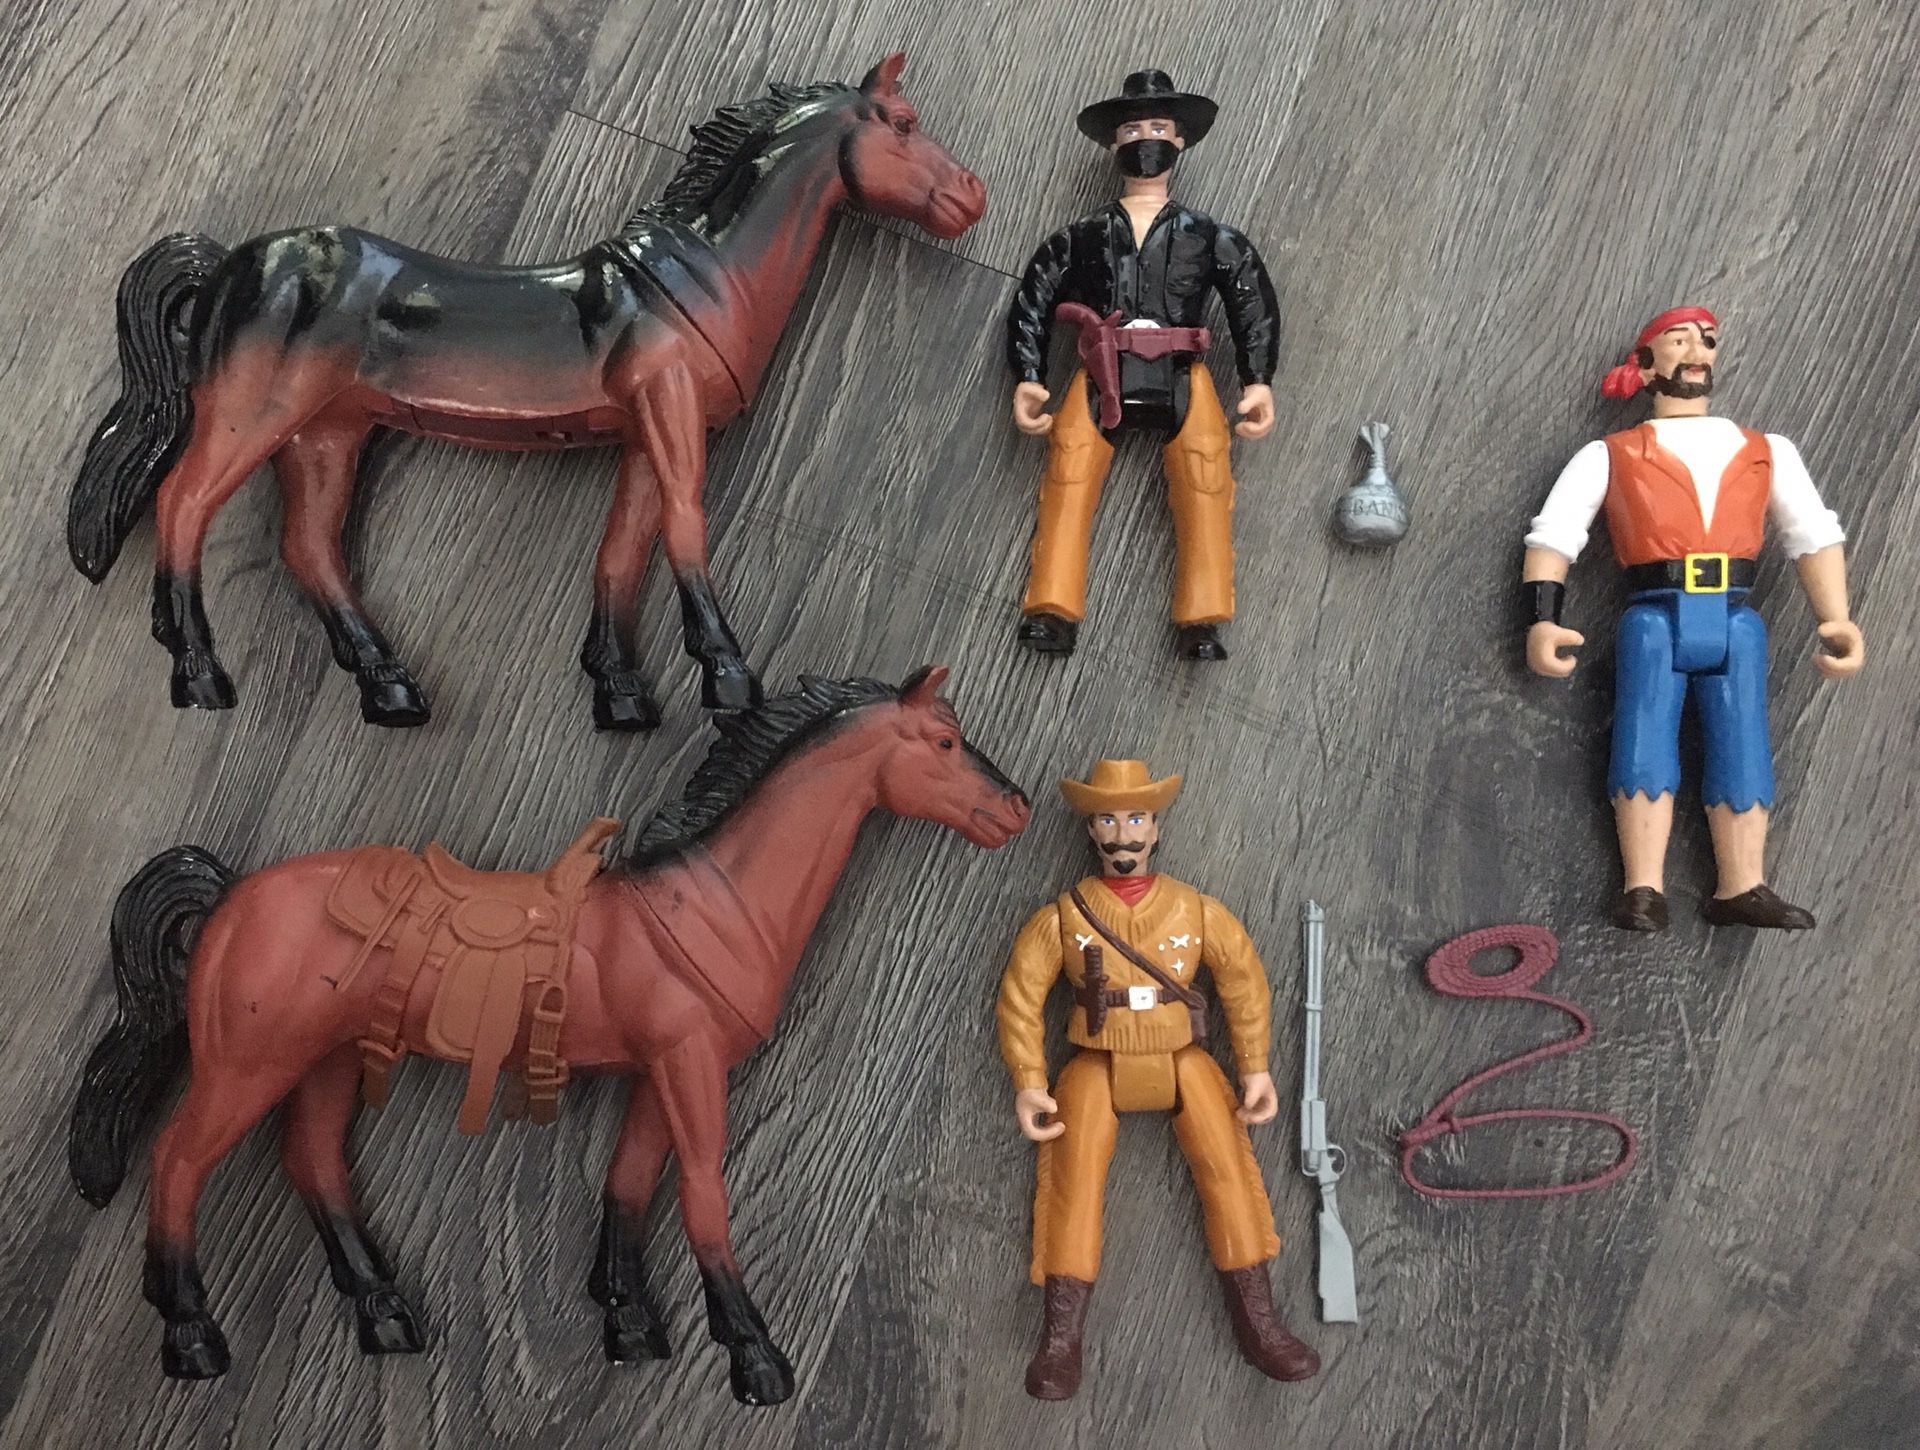 Legends of the Wild West Vintage Action Figure Vintage Old Toy Lot